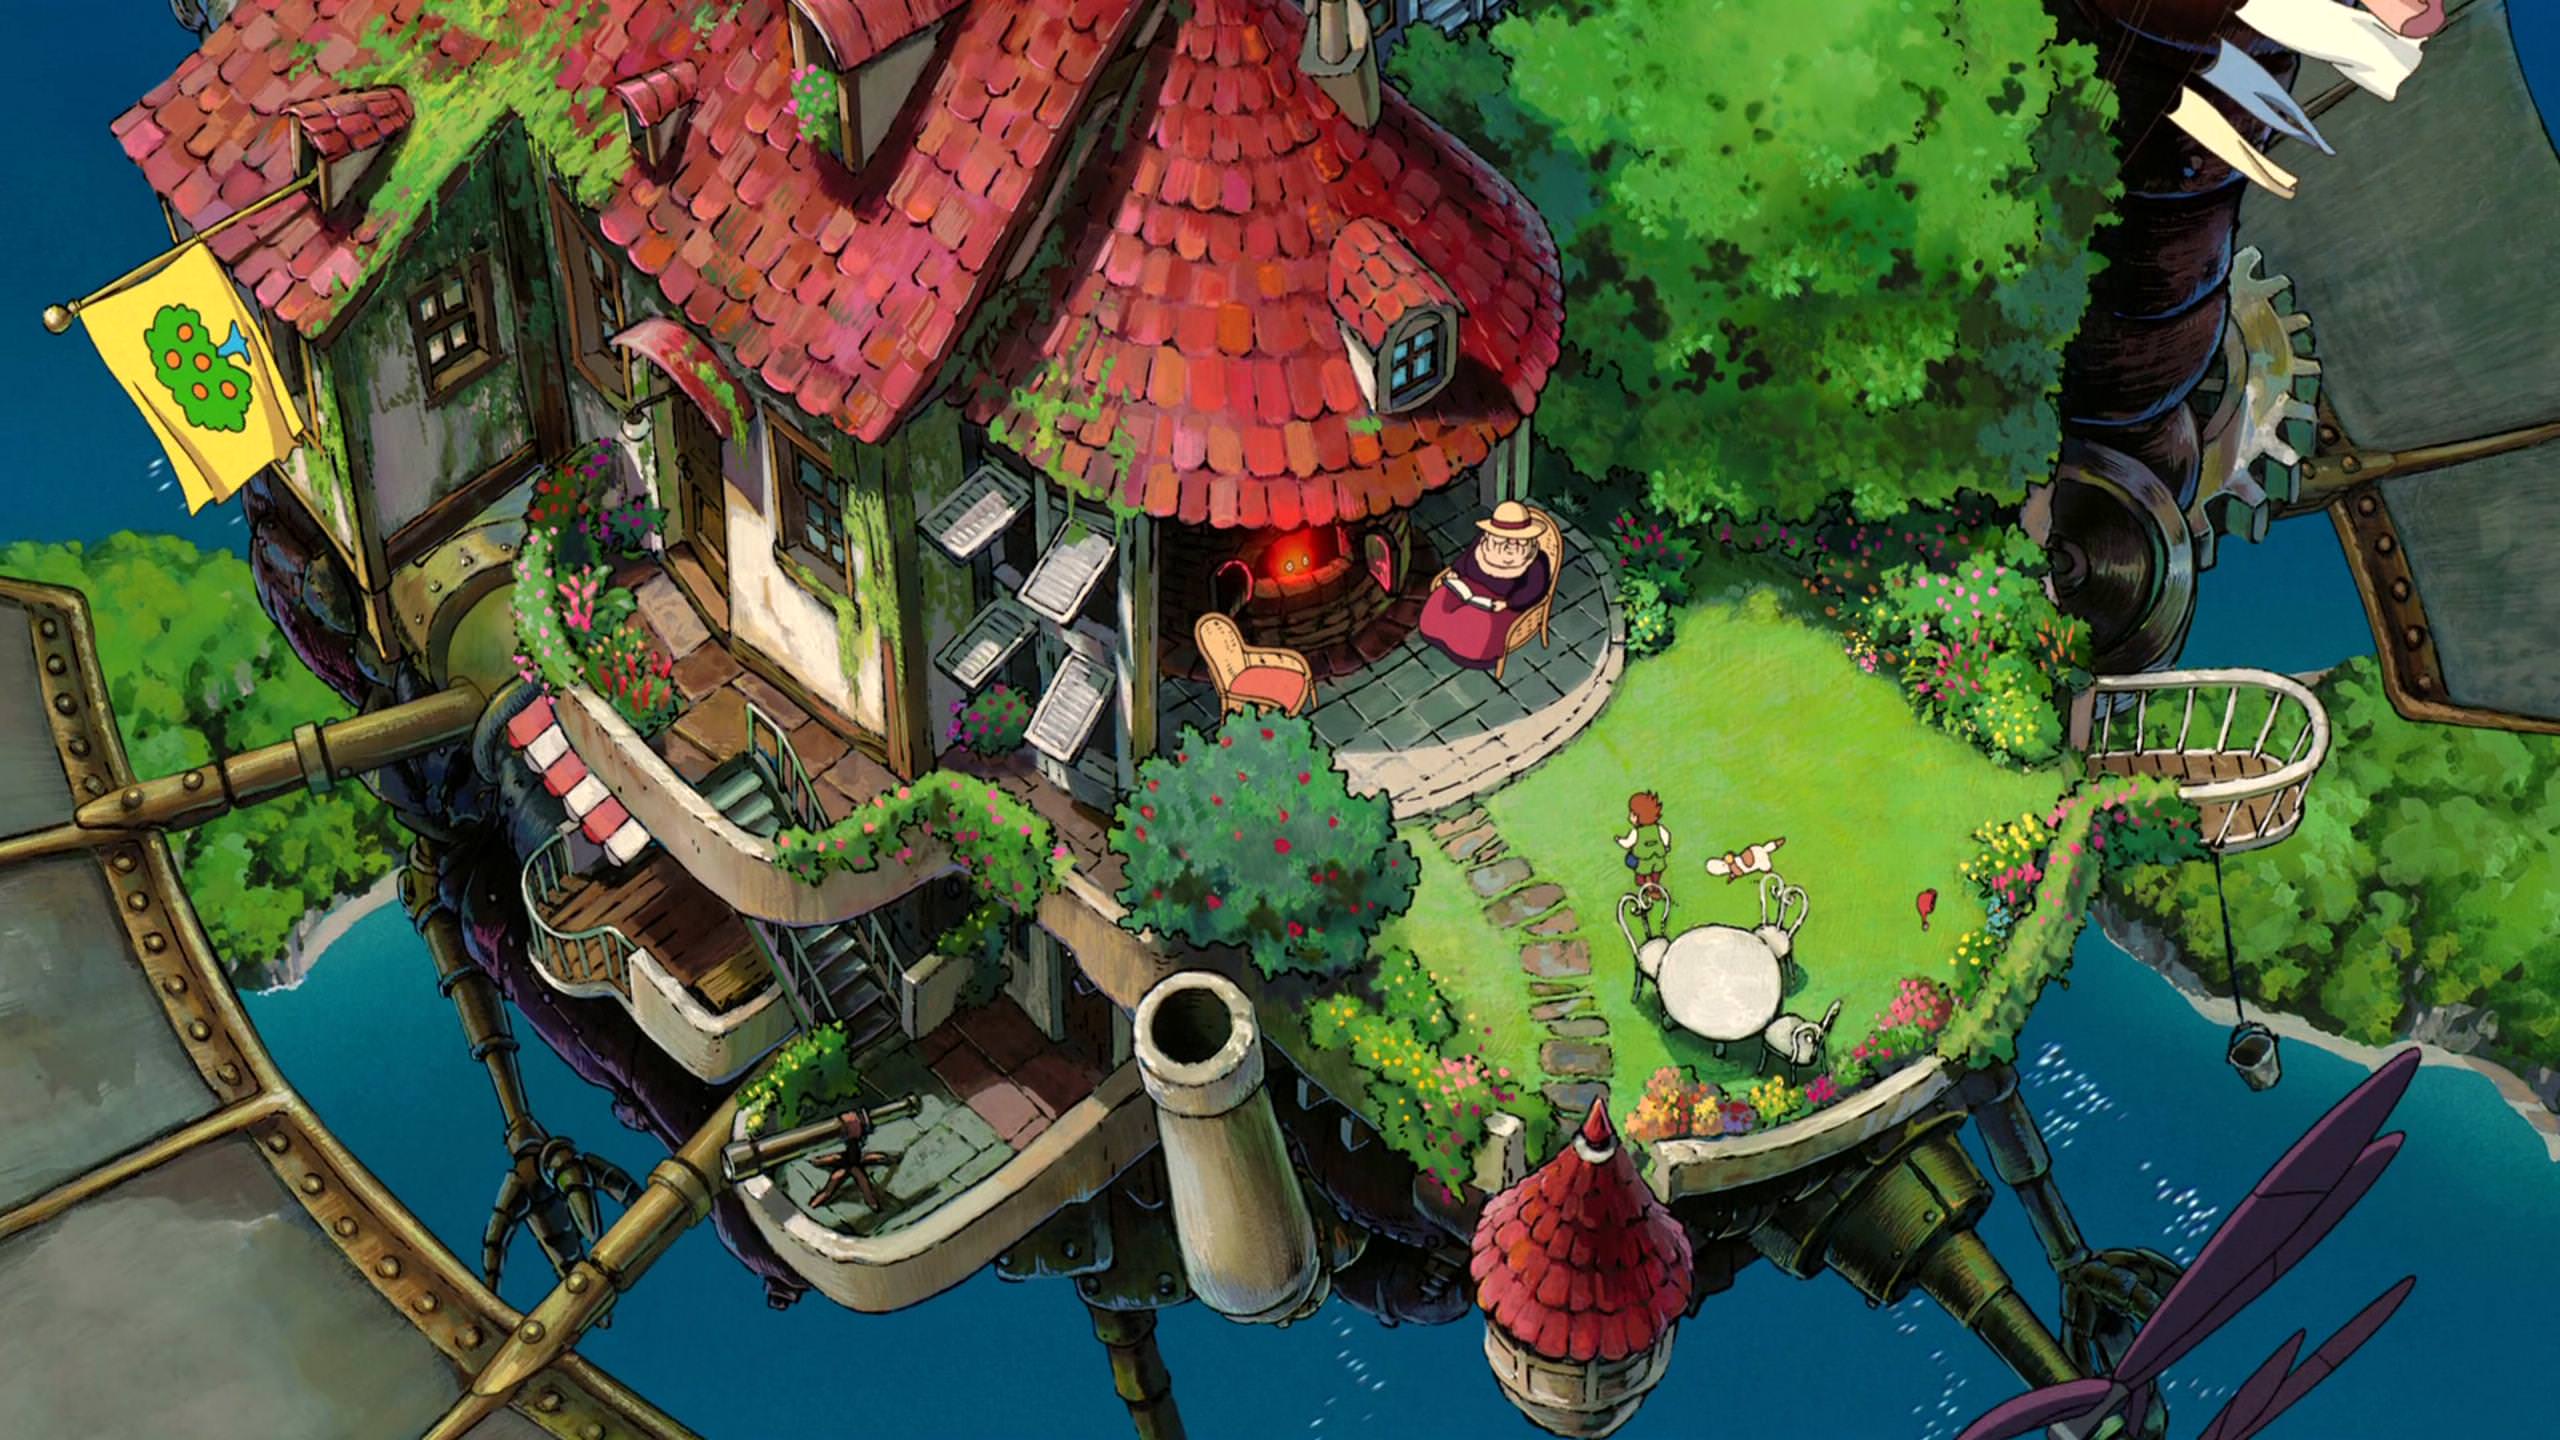 Anime Studio Ghibli Hauru No Ugoku Shiro Howls Moving Castle 2560x1440